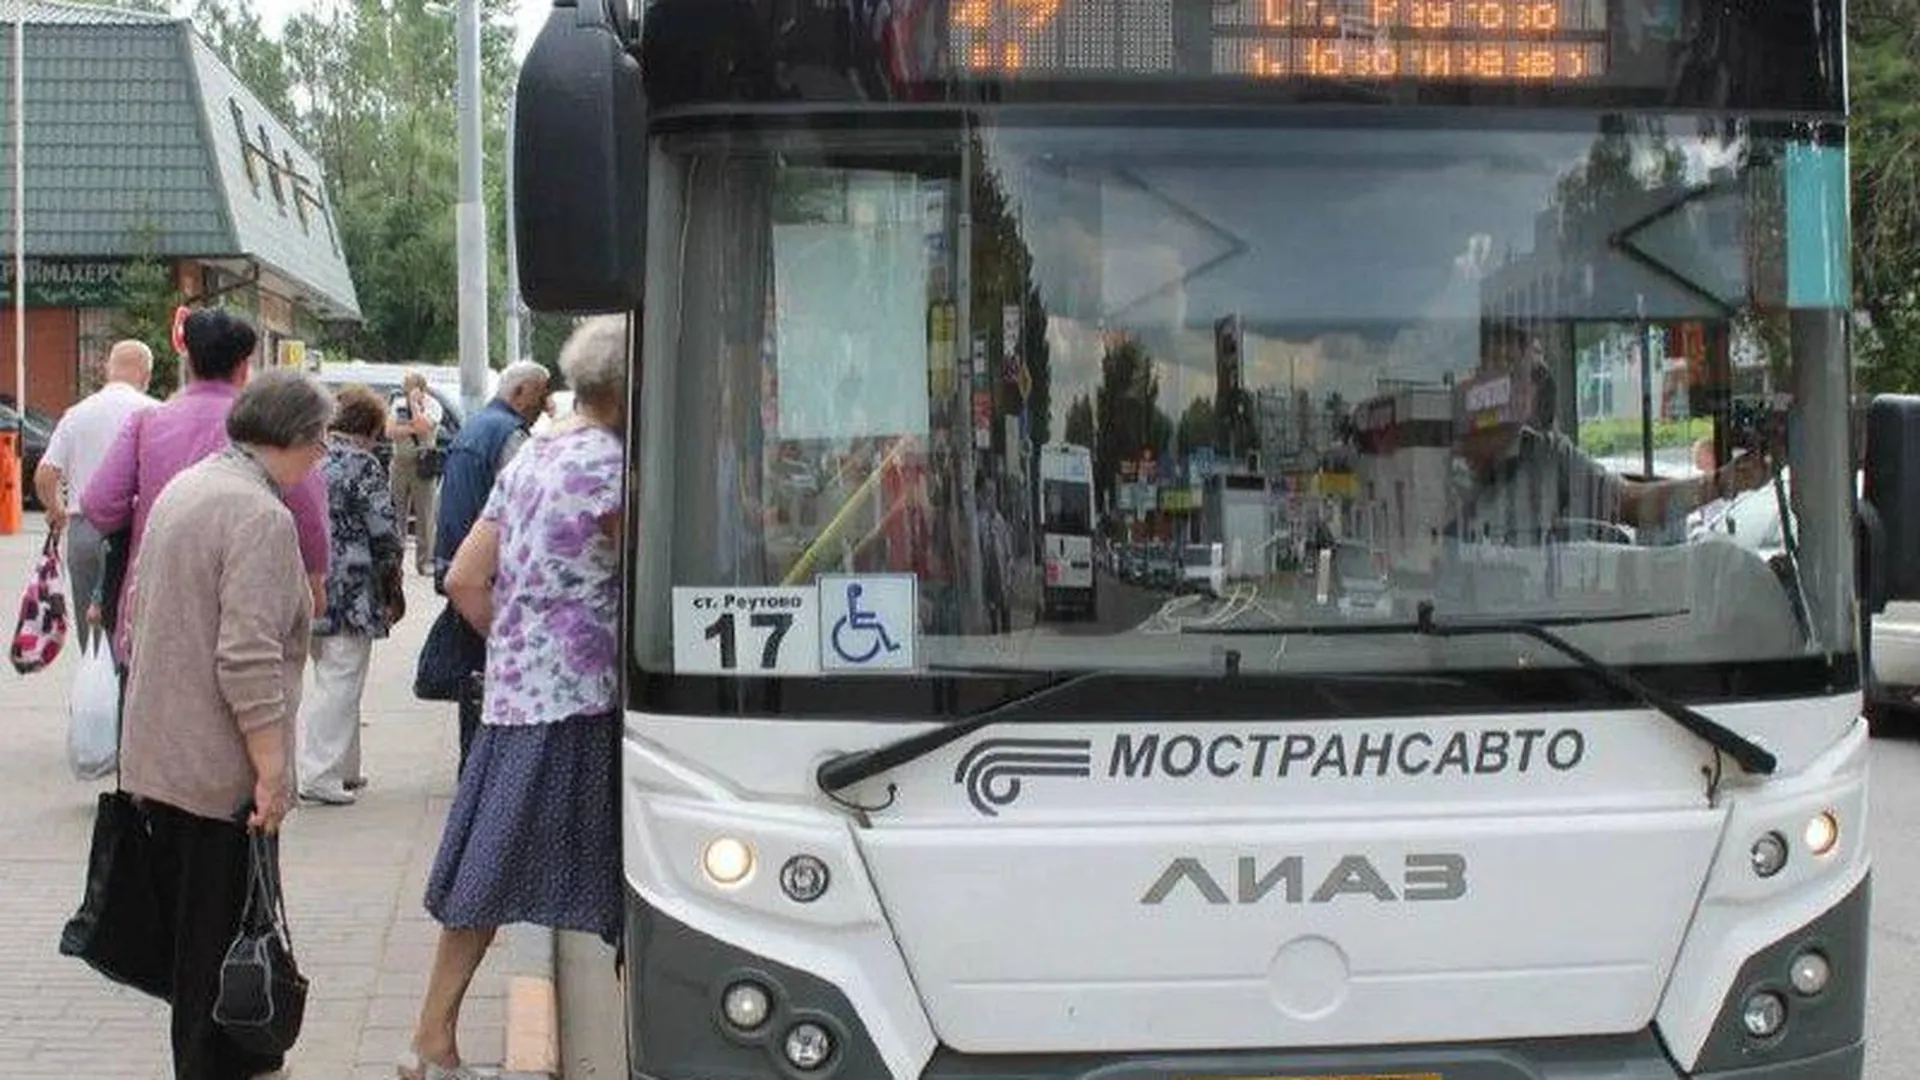 Пресс-служба Министерства транспорта и дорожной инфраструктуры Московской области